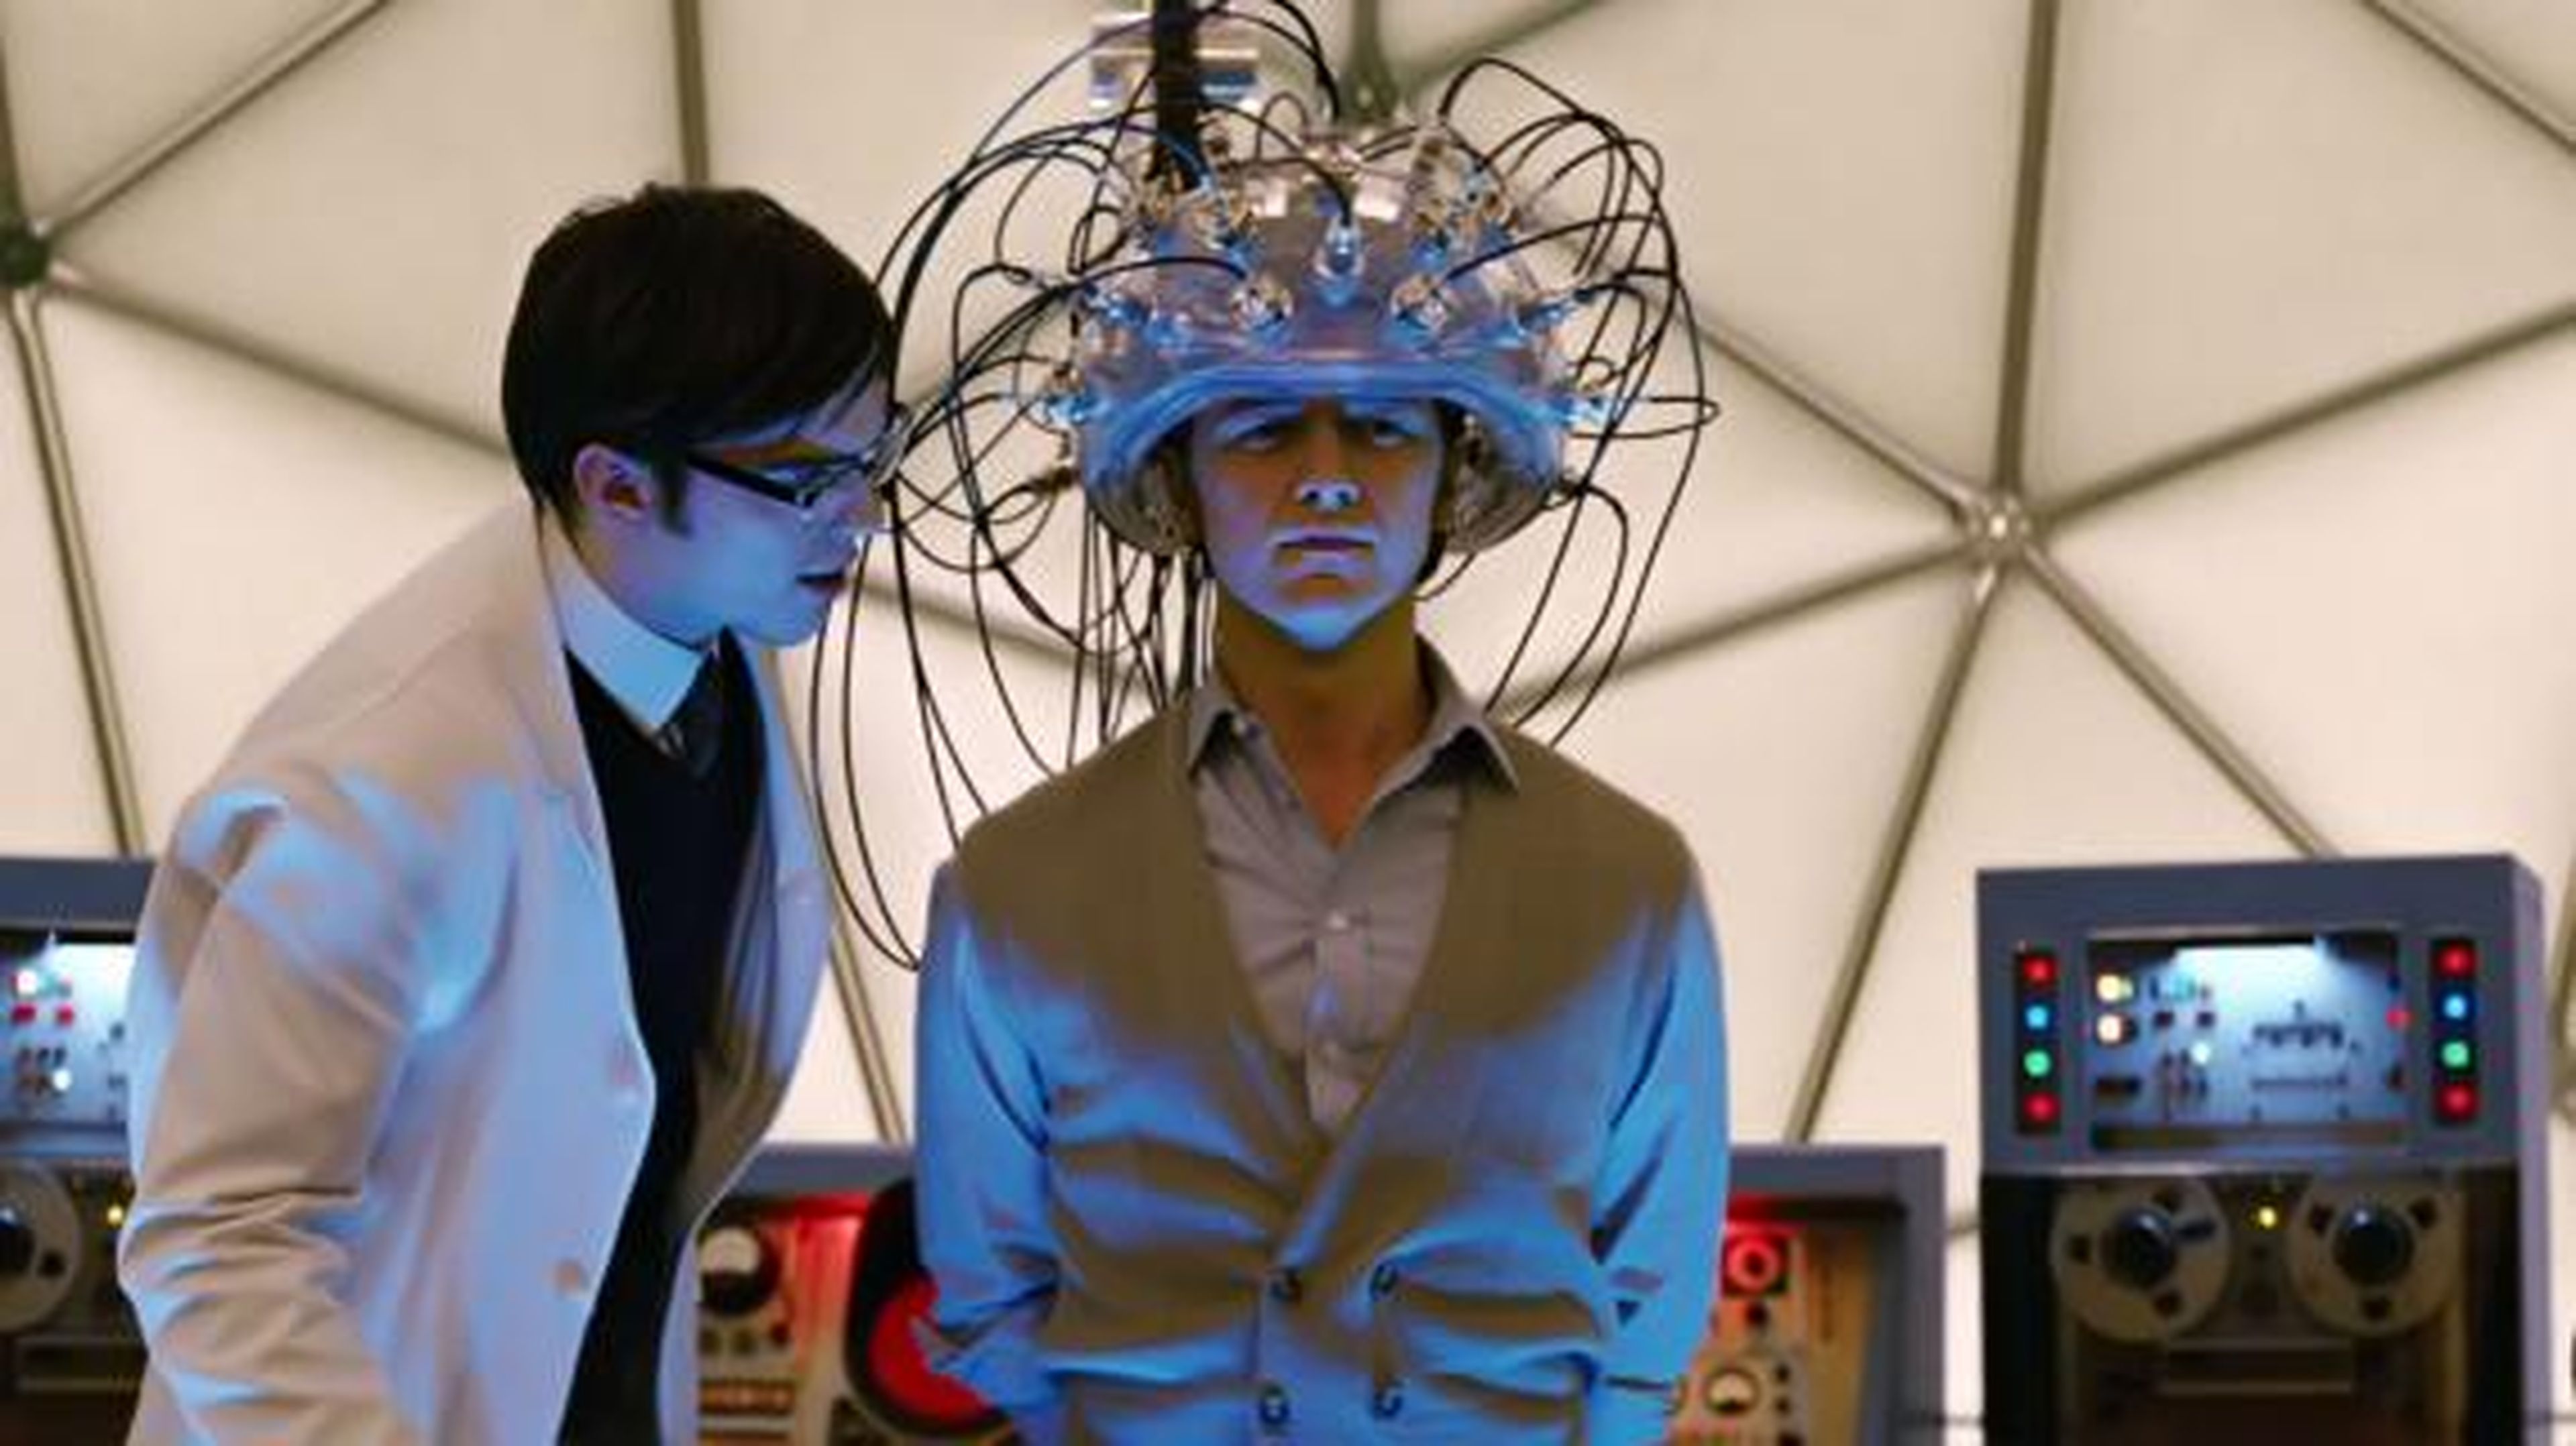 El profesor Xavier hace uso de una interfaz cerebro-ordenador, en 'X-Men'.